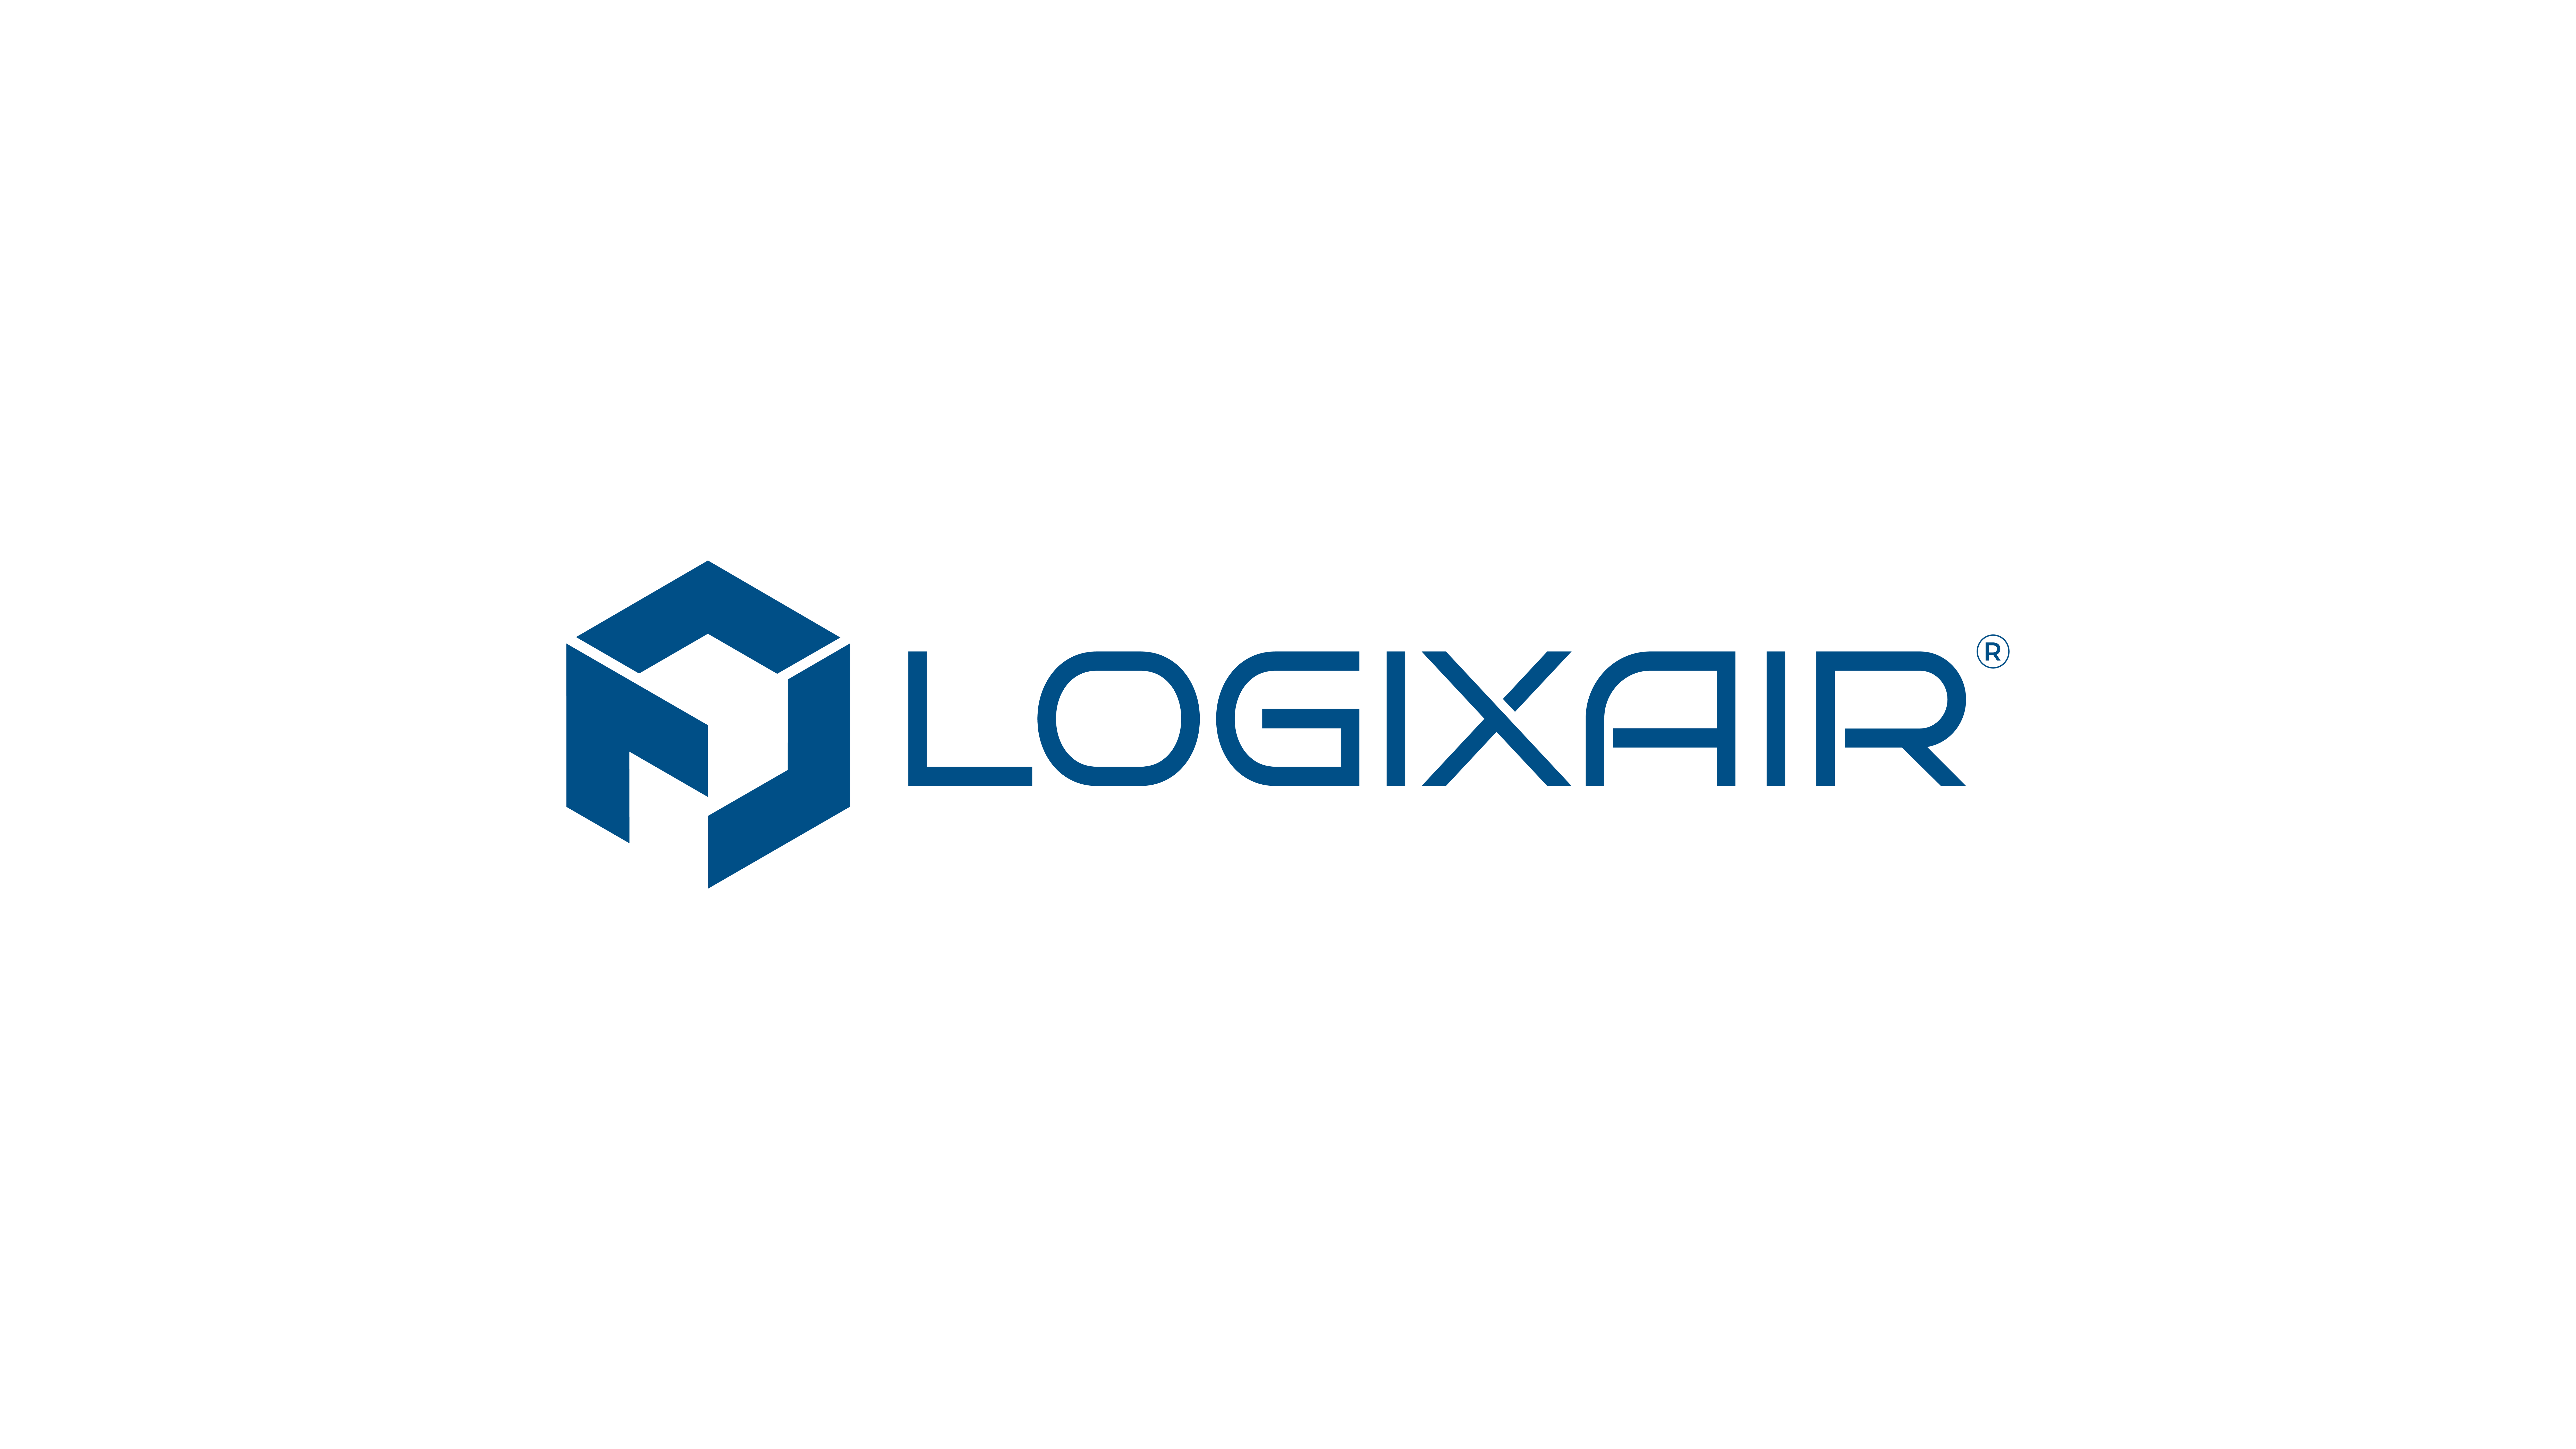 Brand Identity Design for Cargo Drone Startup - Markenbildung & Positionierung